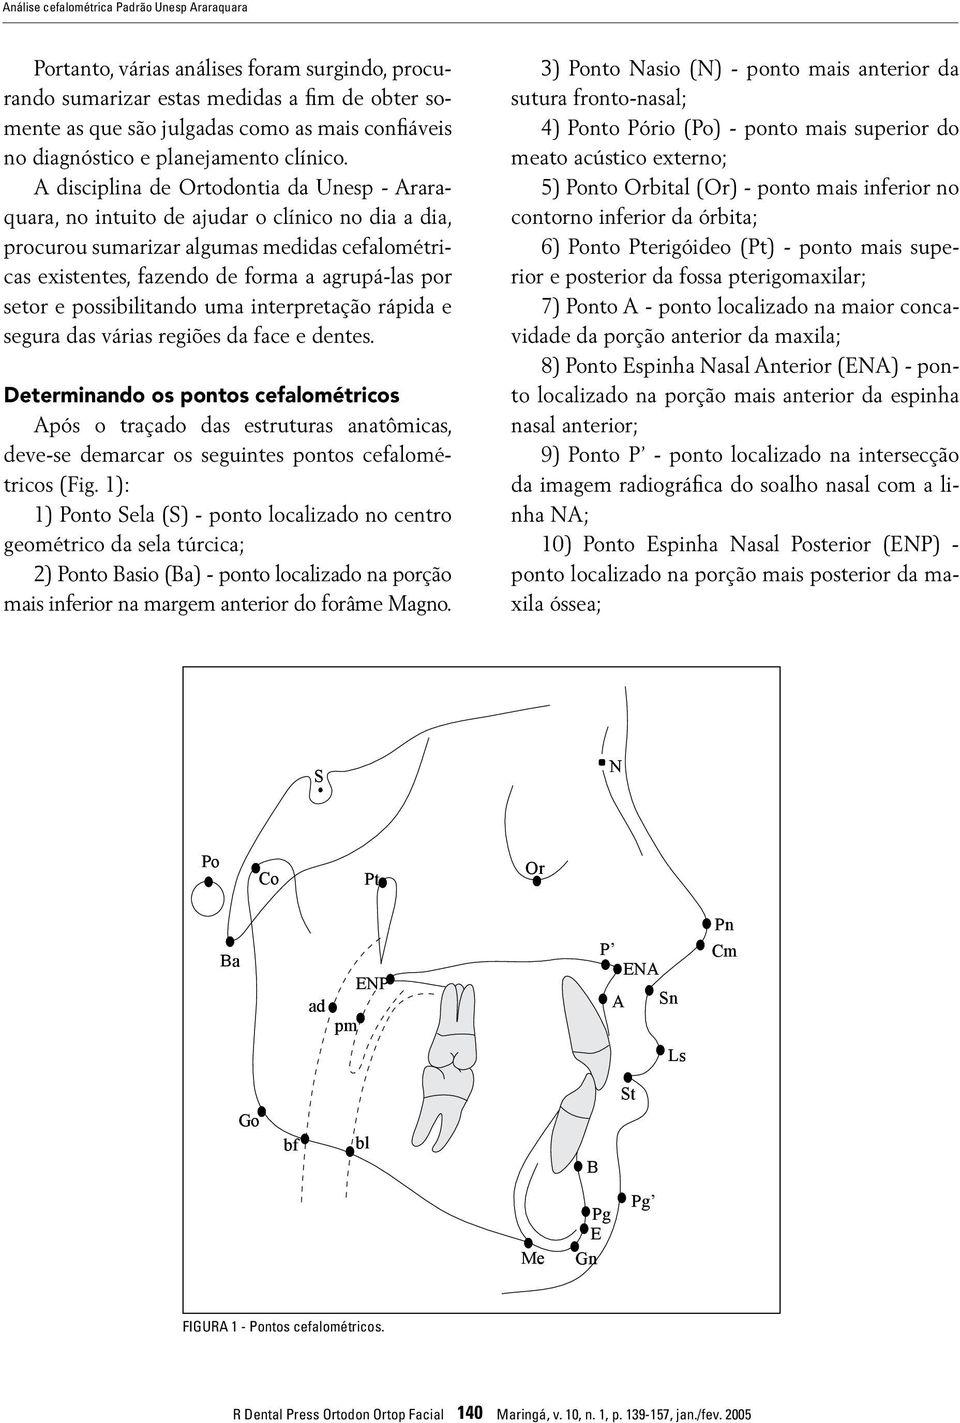 A disciplina de Ortodontia da Unesp - Araraquara, no intuito de ajudar o clínico no dia a dia, procurou sumarizar algumas medidas cefalométricas existentes, fazendo de forma a agrupá-las por setor e